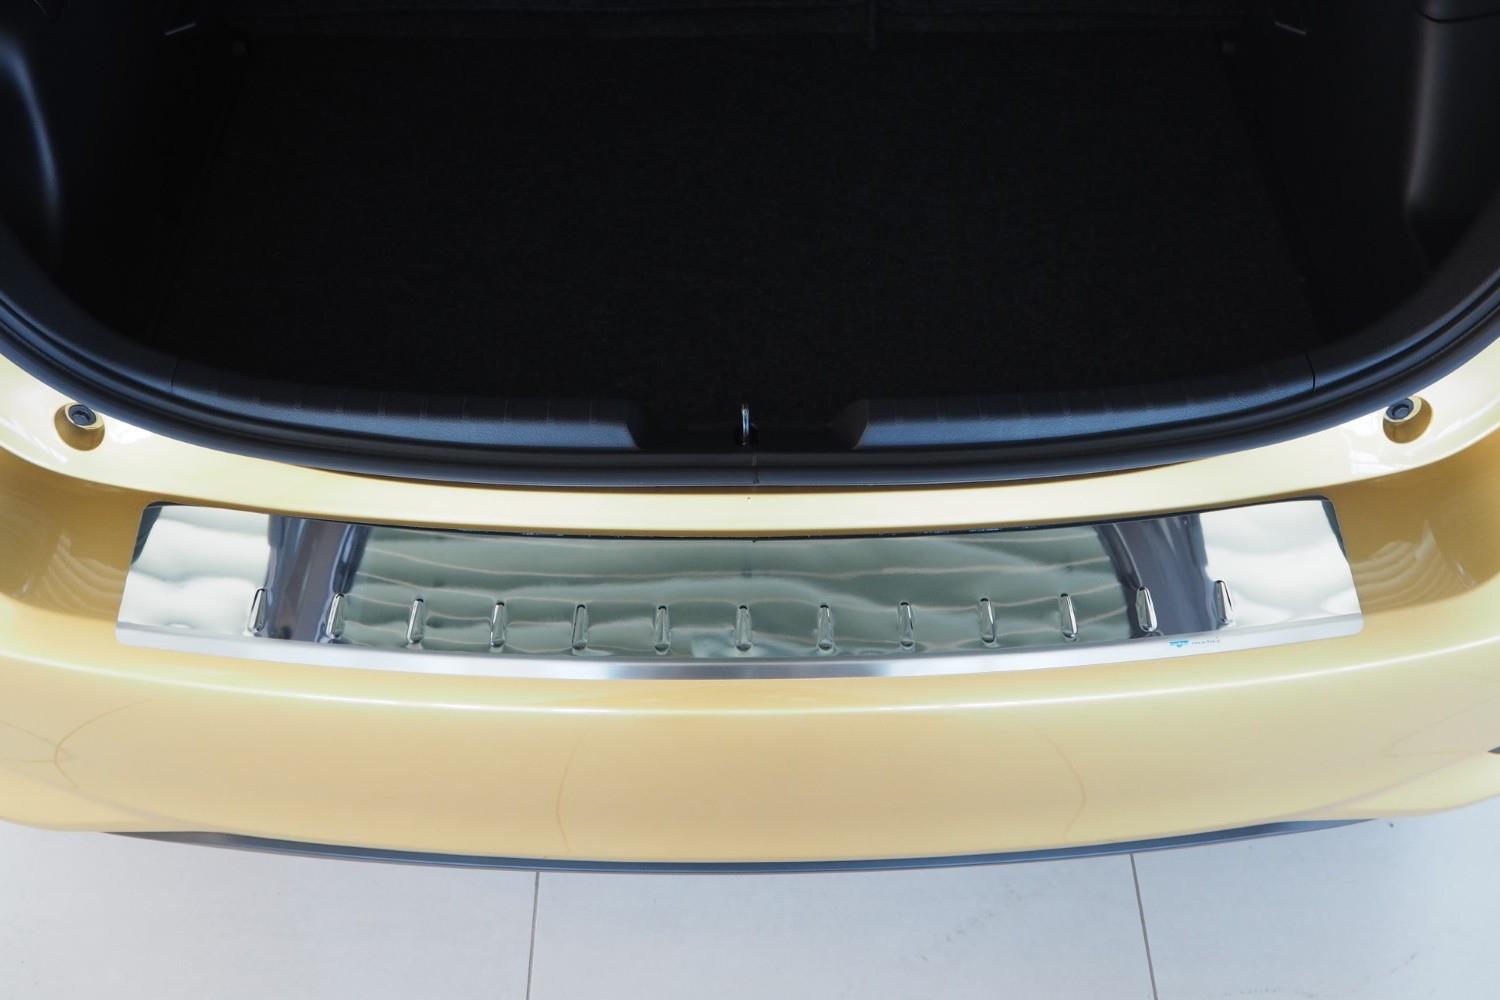 Lackschutz Folie Carbon für Stoßstange Toyota Yaris Hatchback 2014 